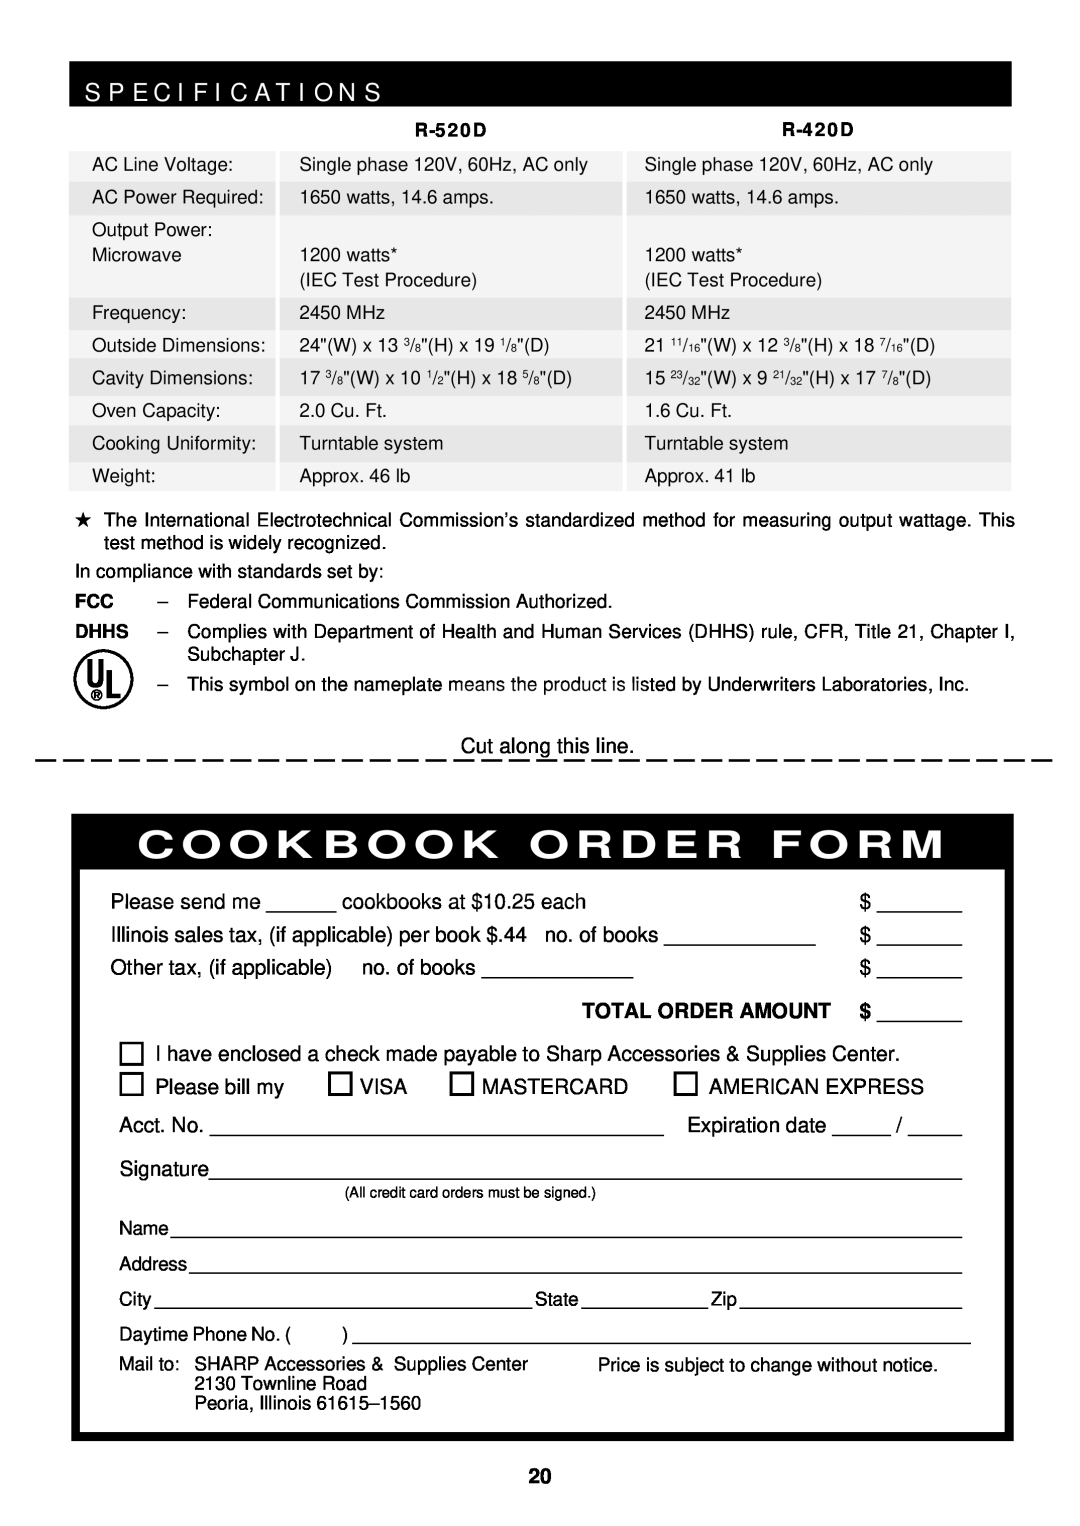 Sharp R-420D, R-520D operation manual S P E C I F I C A T I O N S, Total Order Amount, Cookbook Order Form 